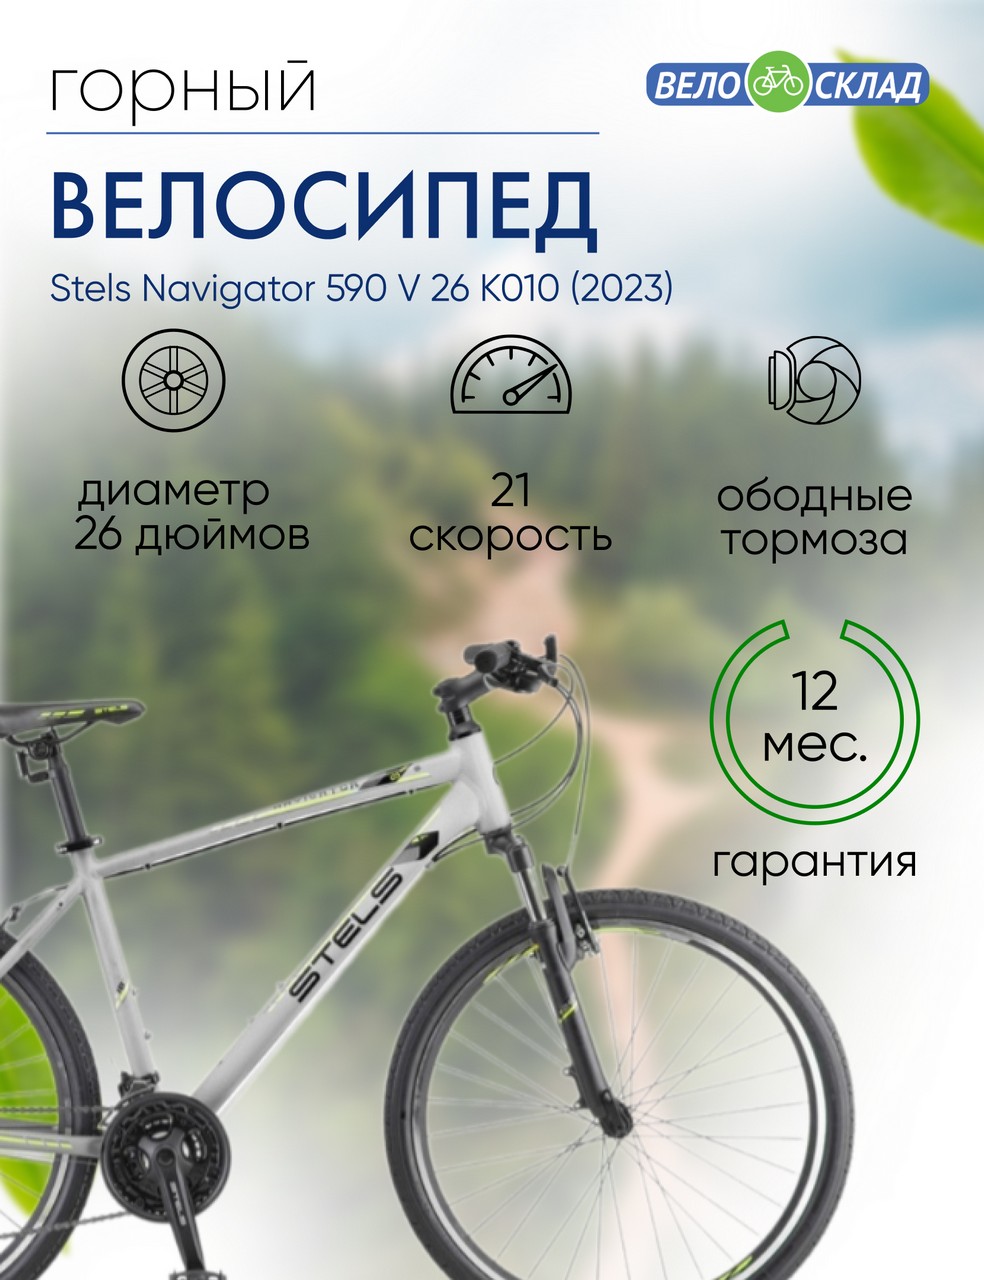 Горный велосипед Stels Navigator 590 V 26 K010, год 2023, цвет Серебристый-Зеленый, ростовка 16